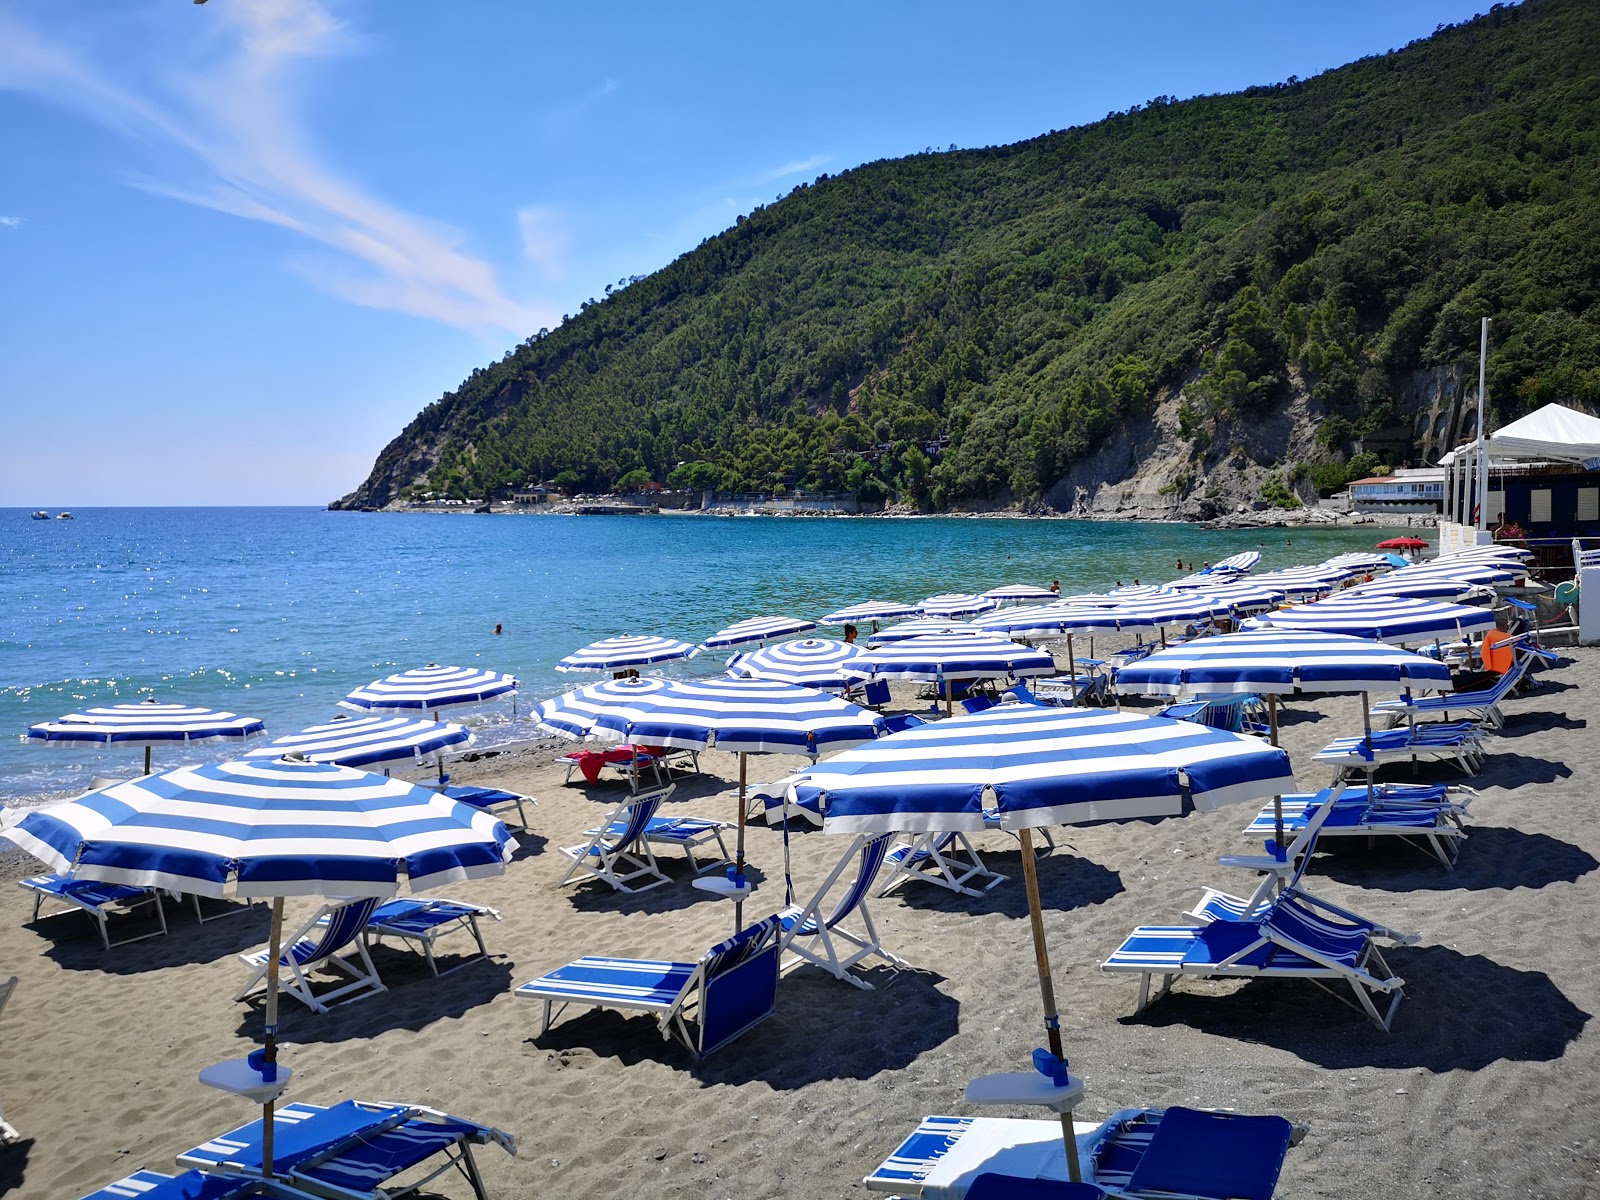 Foto av Spiaggia La Secca med rak strand